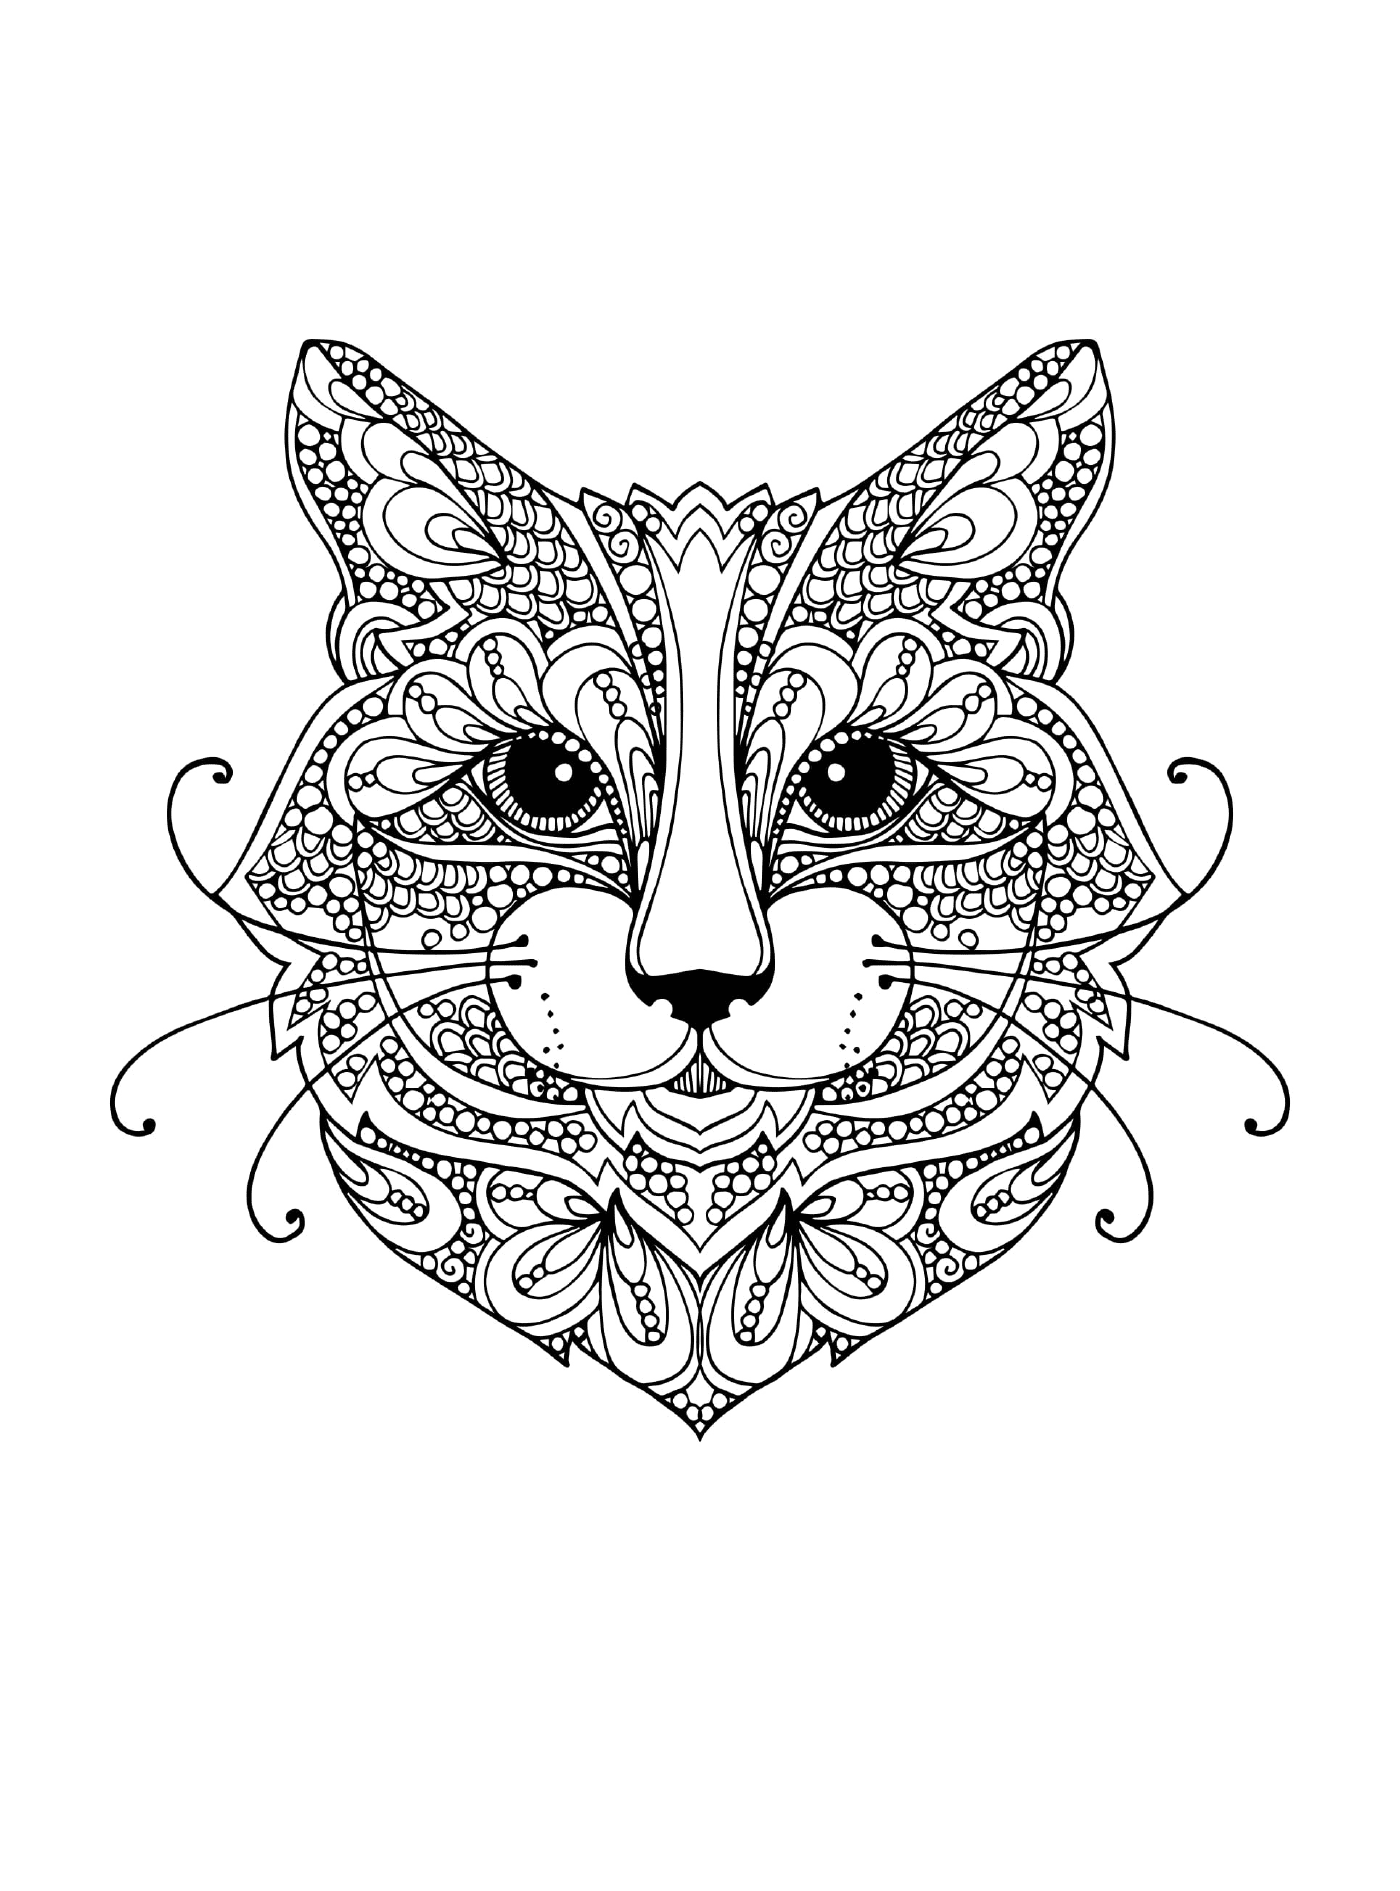  Gato com um padrão floral no rosto 